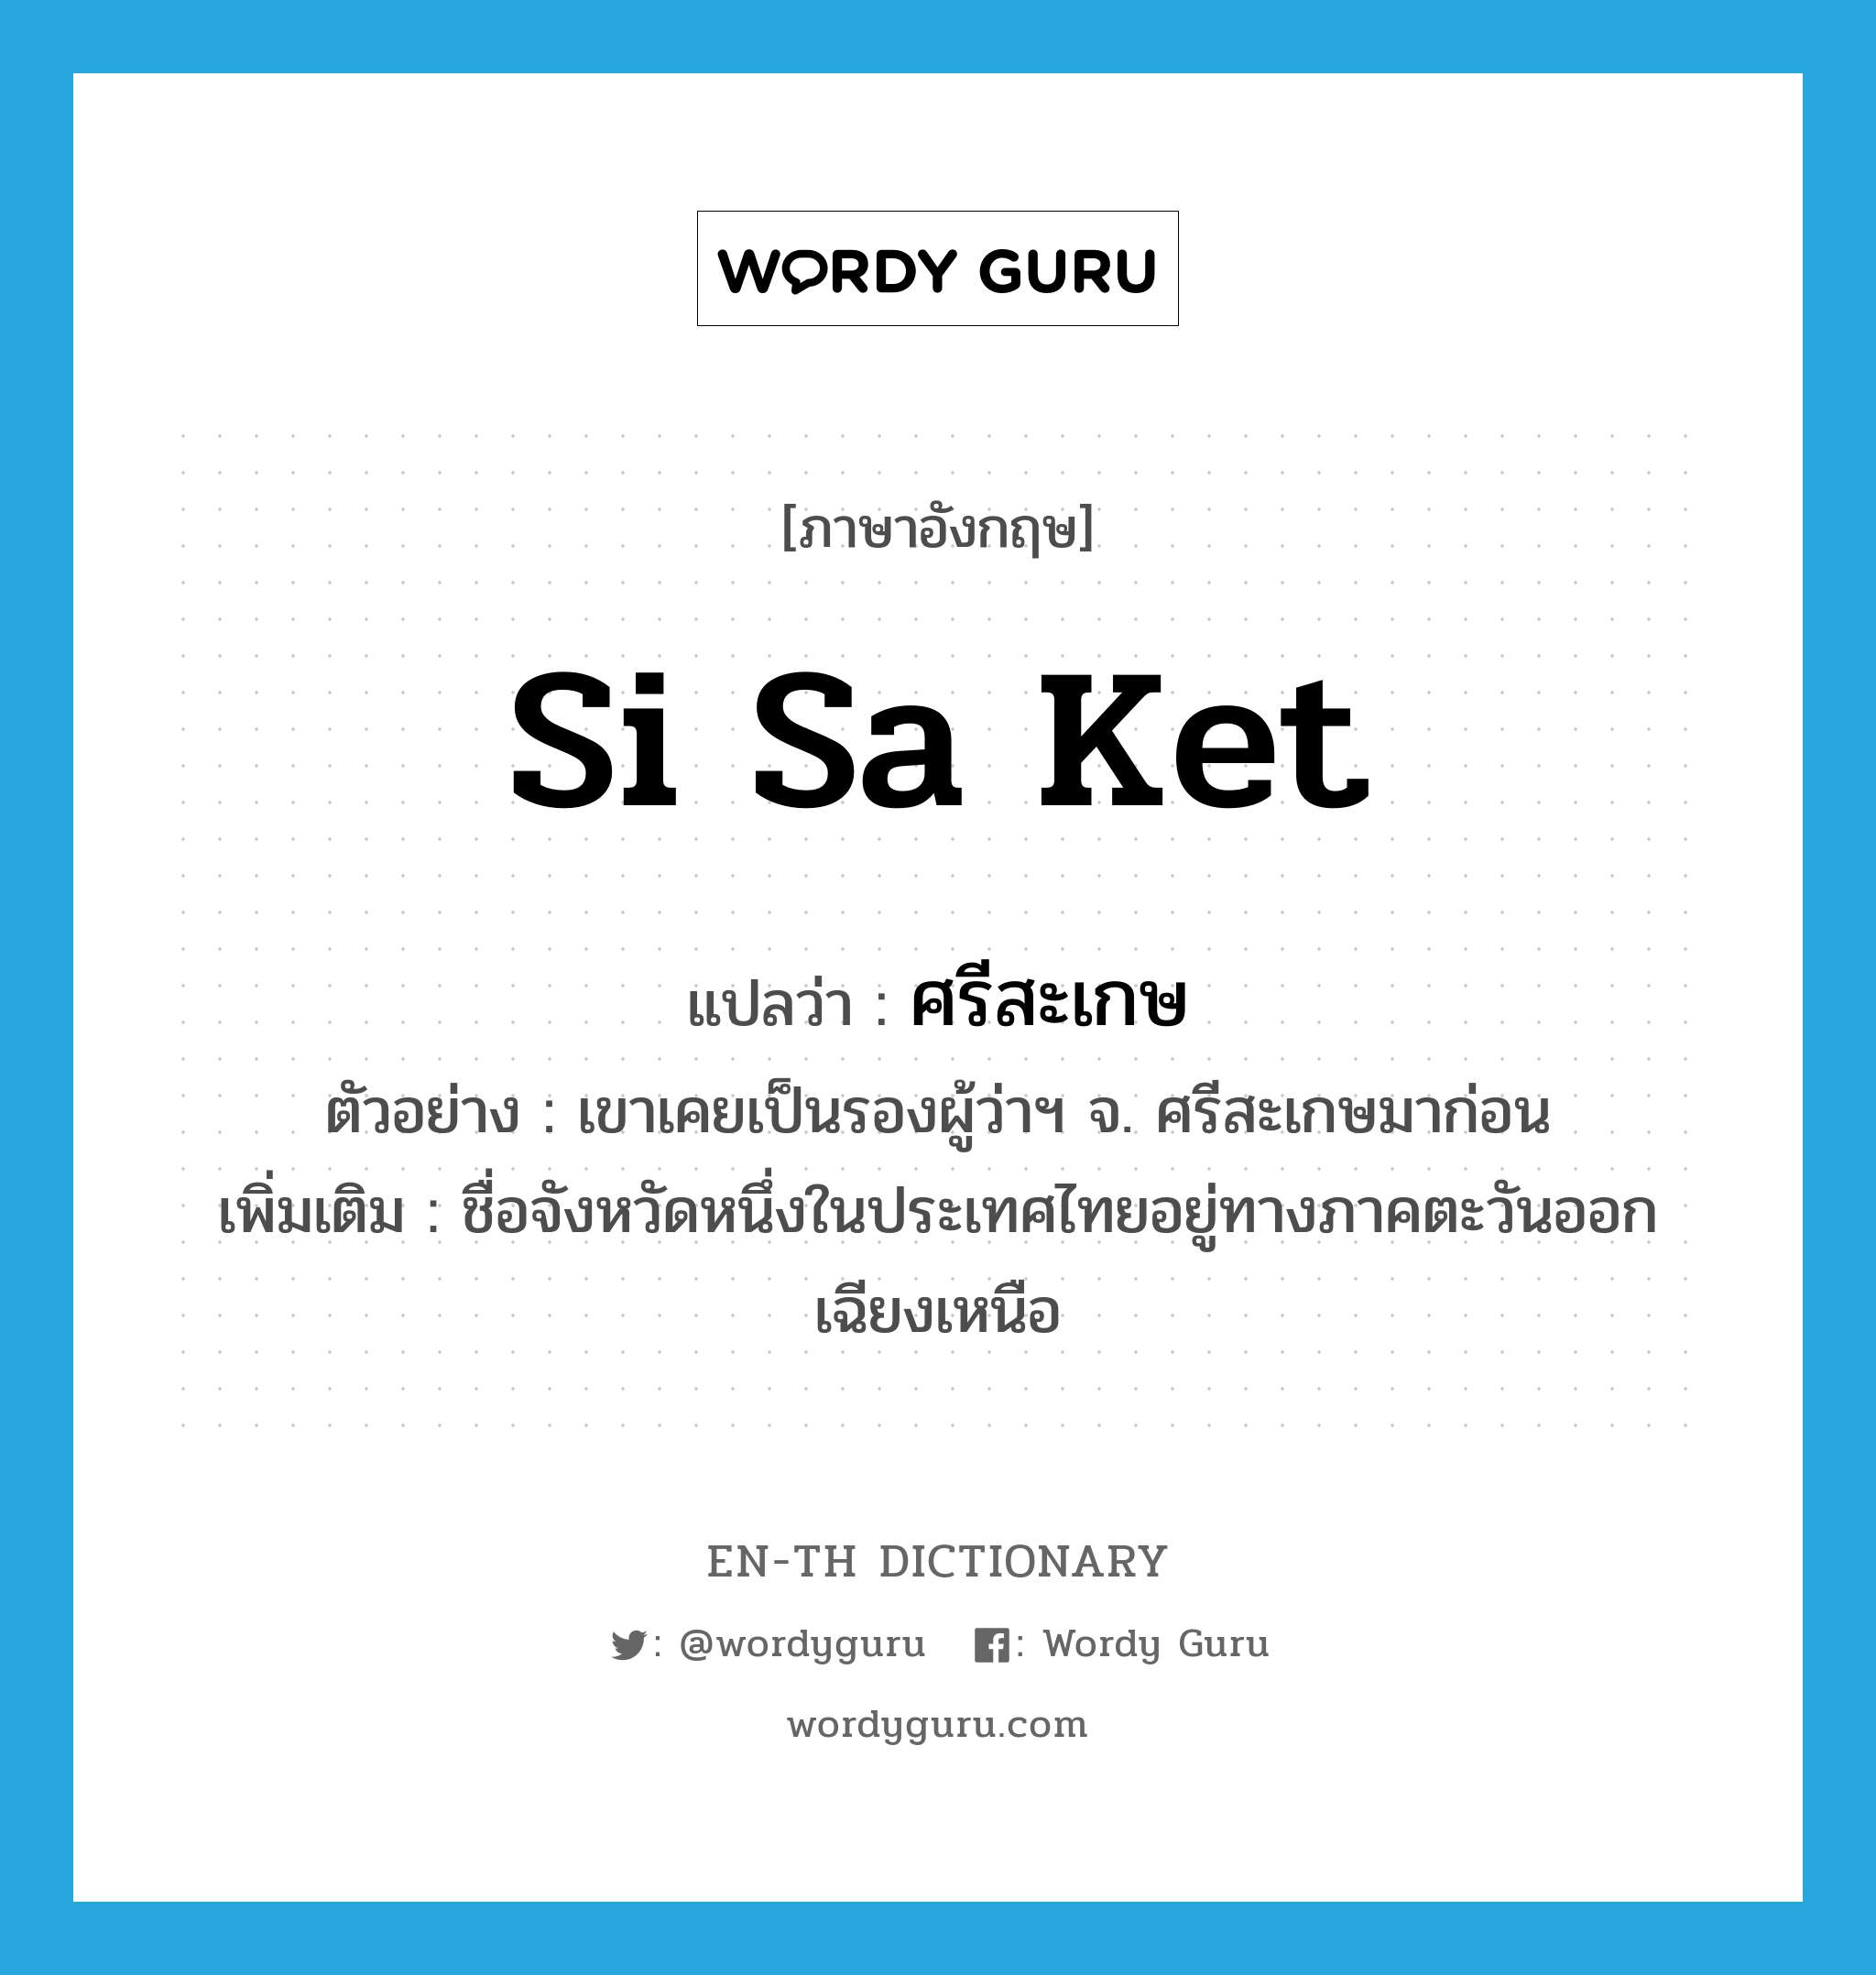 Si Sa Ket แปลว่า?, คำศัพท์ภาษาอังกฤษ Si Sa Ket แปลว่า ศรีสะเกษ ประเภท N ตัวอย่าง เขาเคยเป็นรองผู้ว่าฯ จ. ศรีสะเกษมาก่อน เพิ่มเติม ชื่อจังหวัดหนึ่งในประเทศไทยอยู่ทางภาคตะวันออกเฉียงเหนือ หมวด N